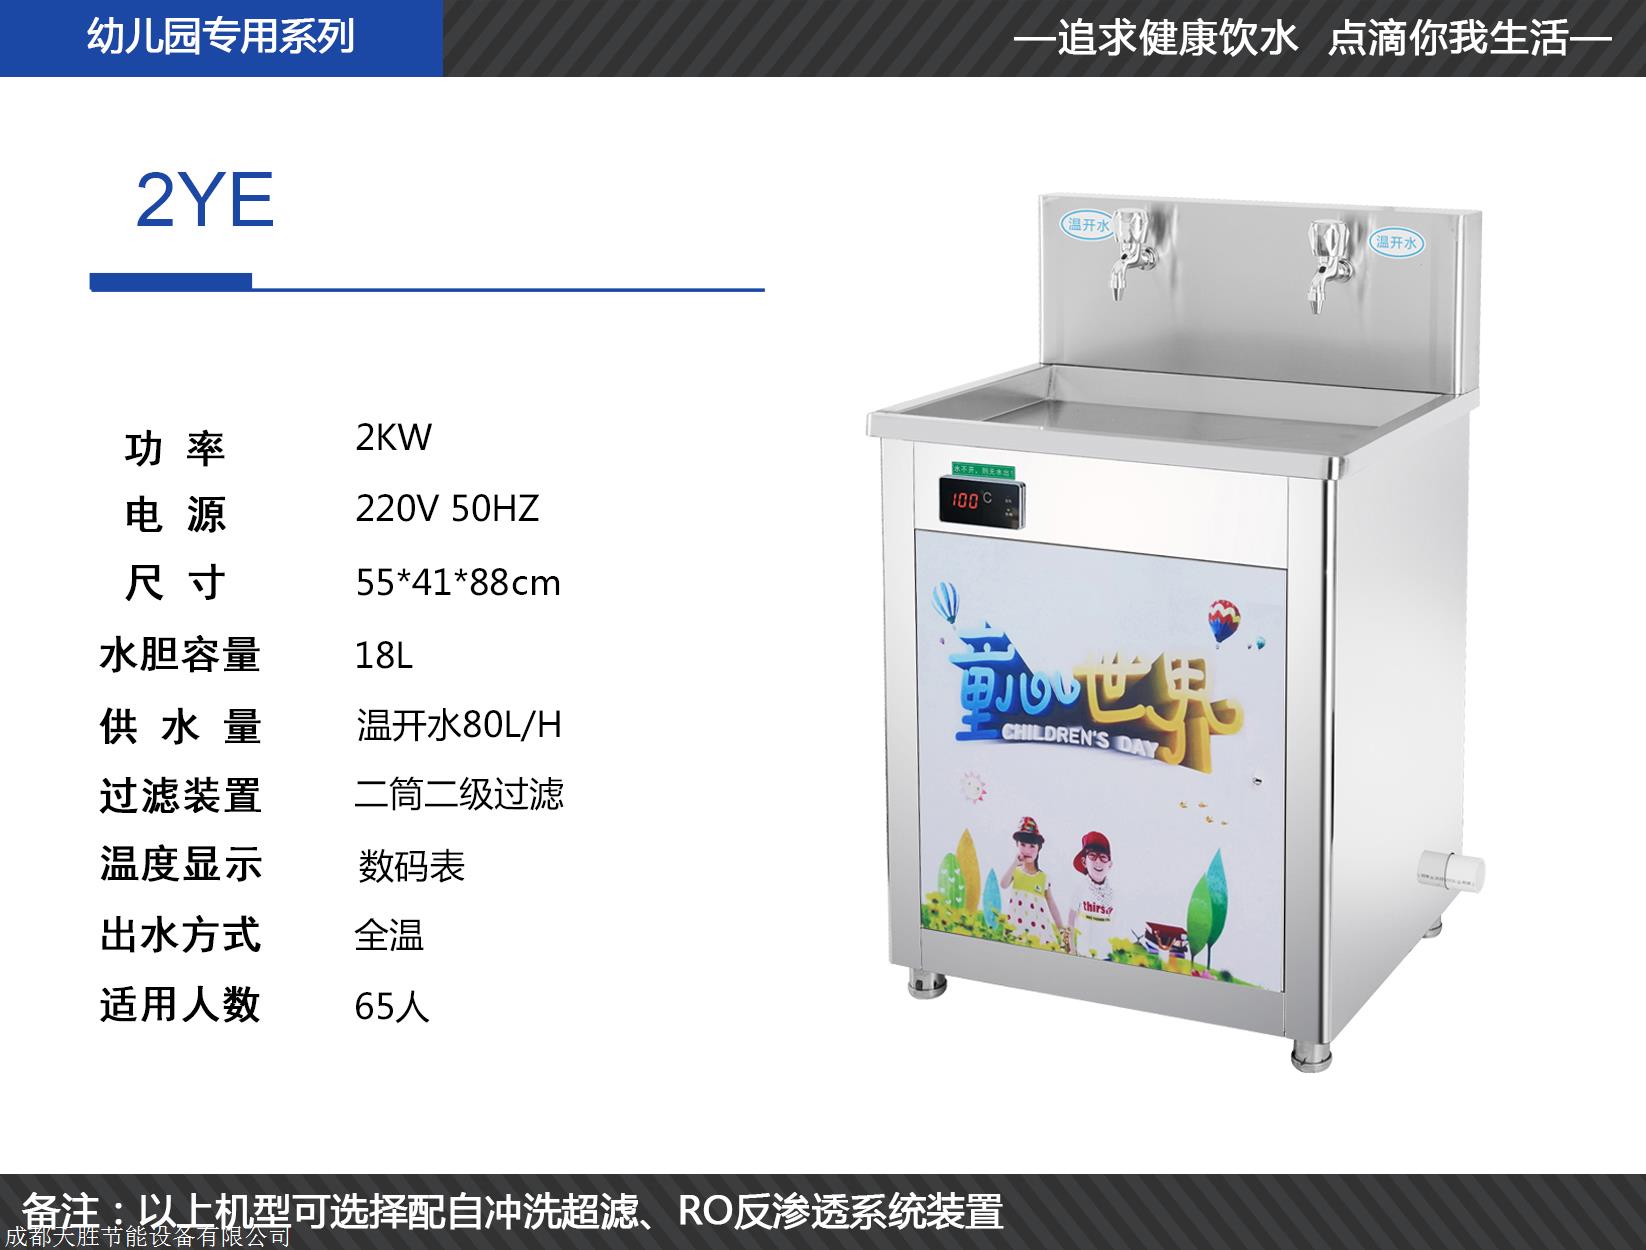 天胜成都幼儿园饮水机厂家  为您提供适合幼儿园的饮水机